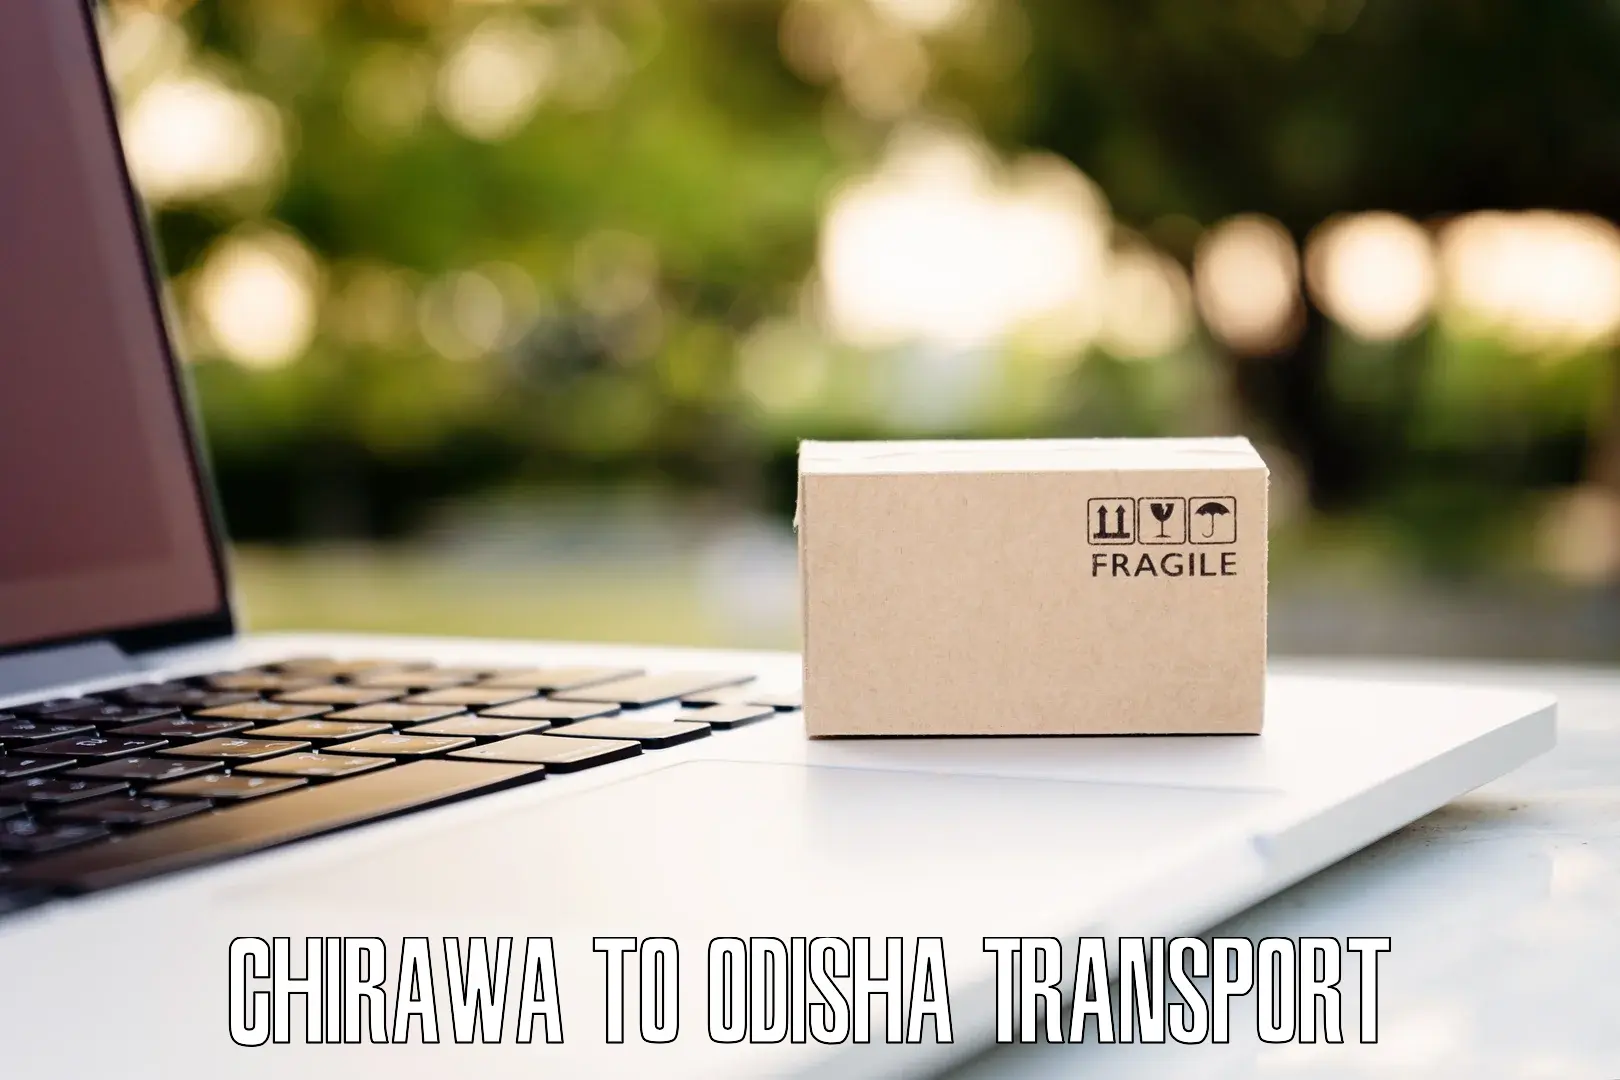 Transportation services Chirawa to Asika